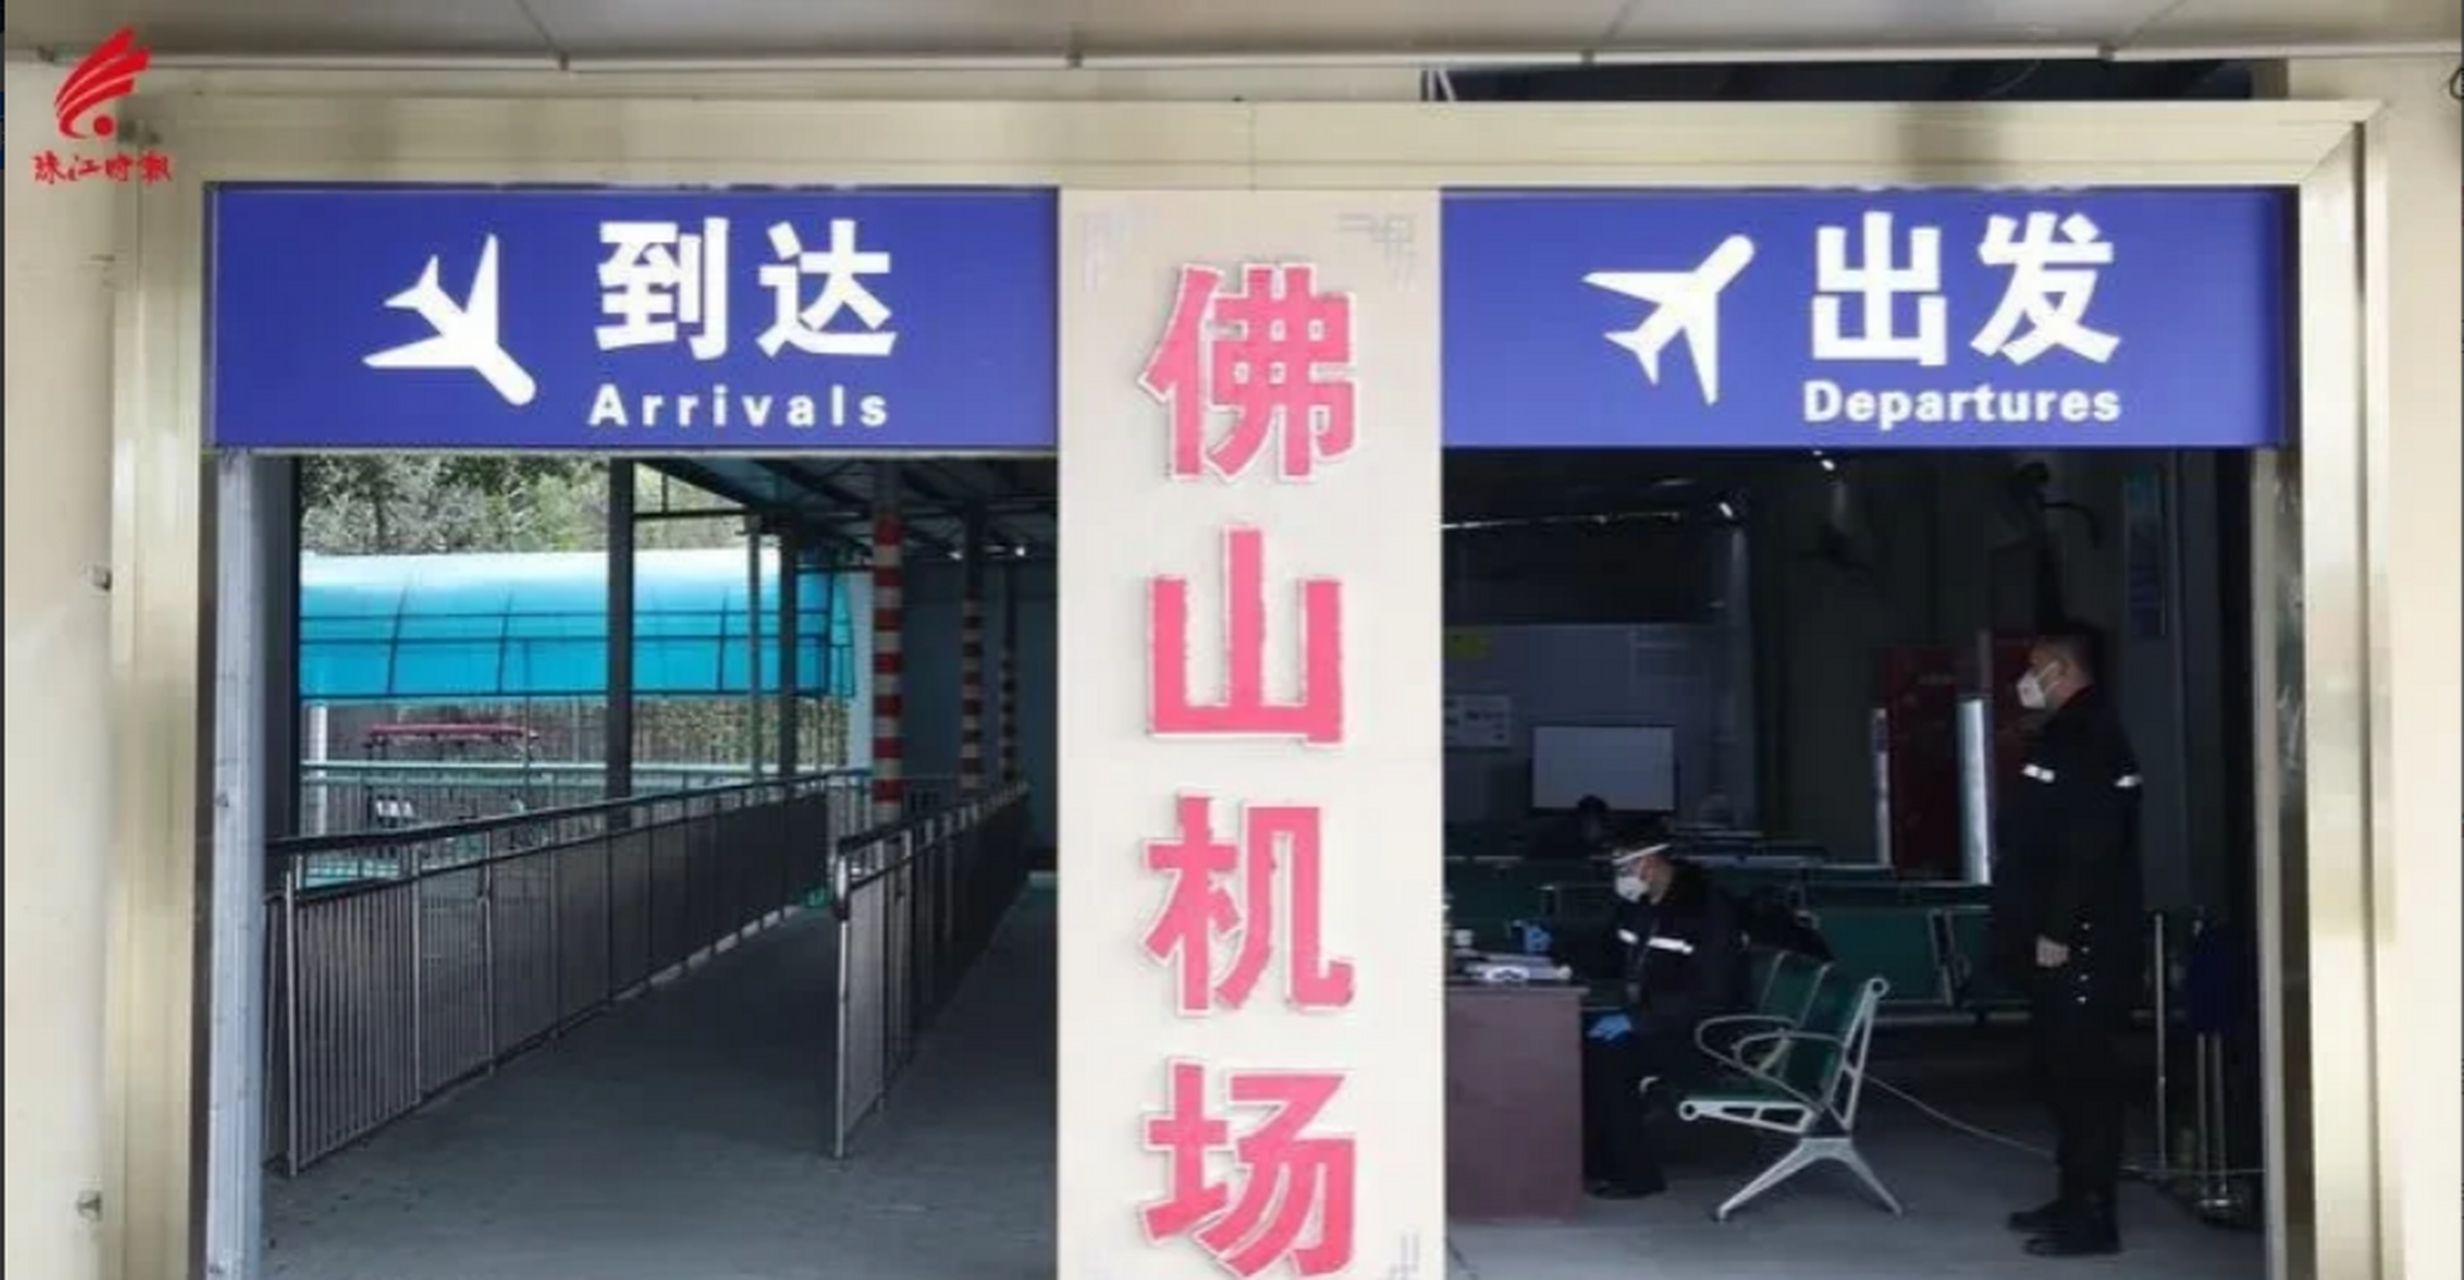 上海虹桥国际机场和佛山沙堤机场,是我国出行最方便的两座机场,不接受